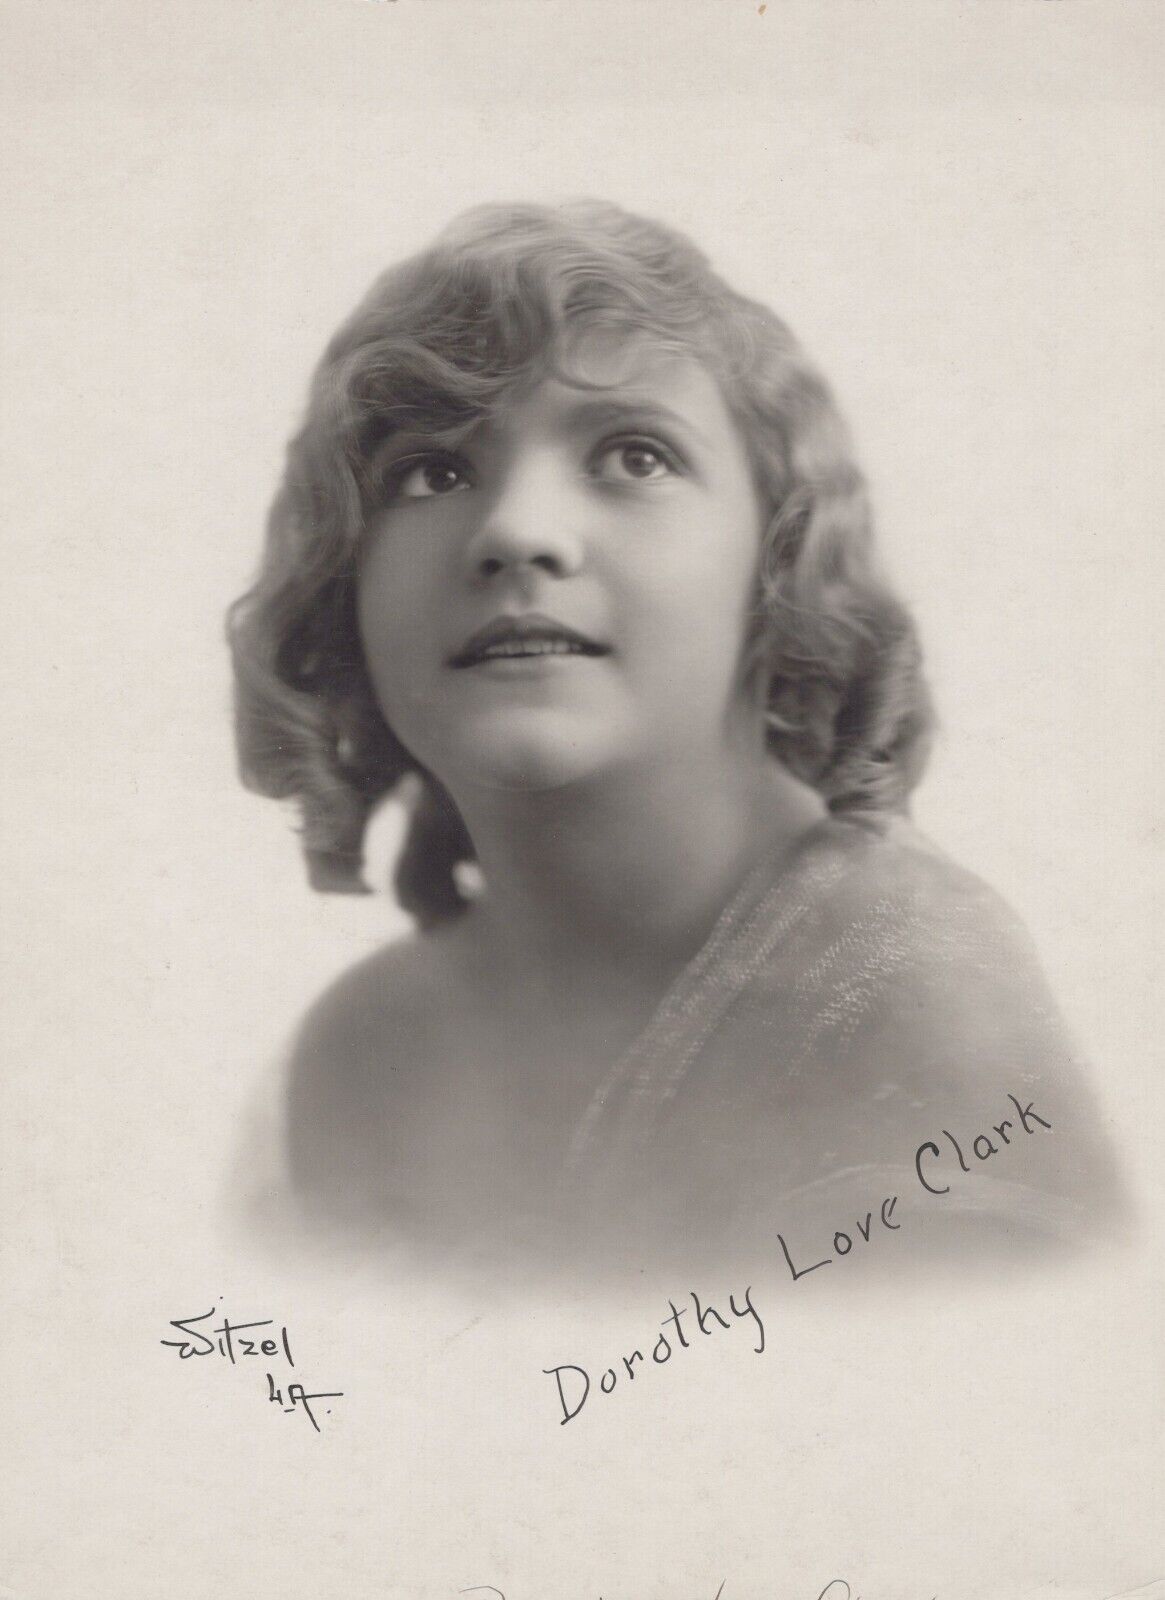 Dorothy Clark (1910s) ❤ Original Vintage - Silent Film Photo by Wizel K 389